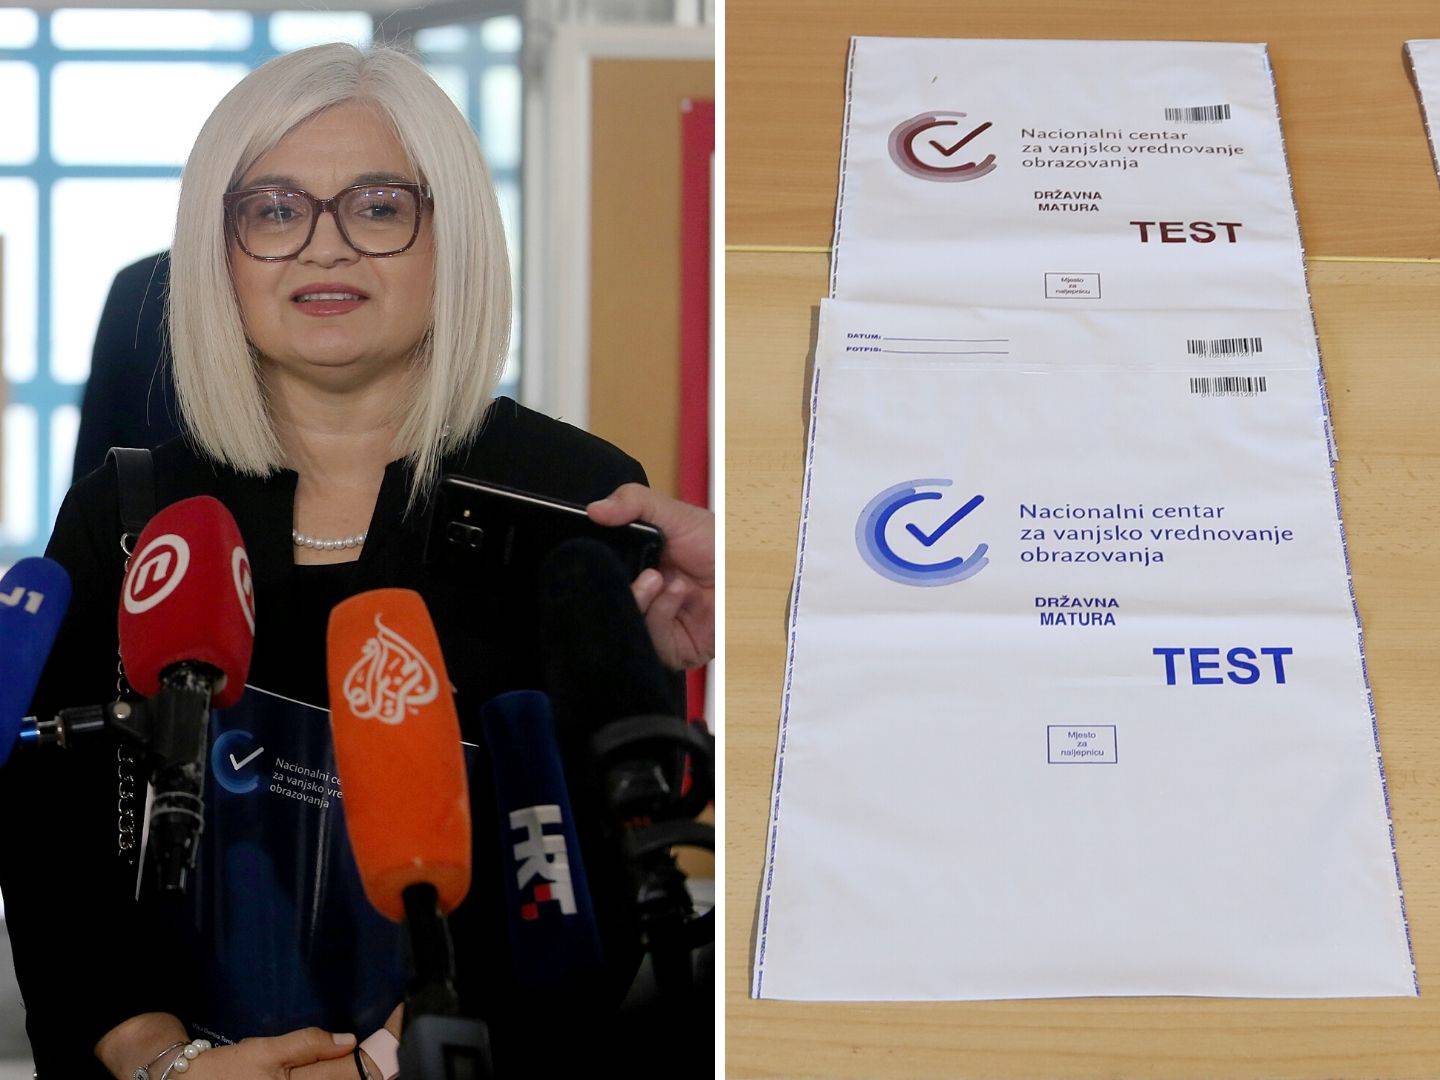 Ravnateljica Katavić: I dalje odbacujem tvrdnje da sam prekršila propise o maturi